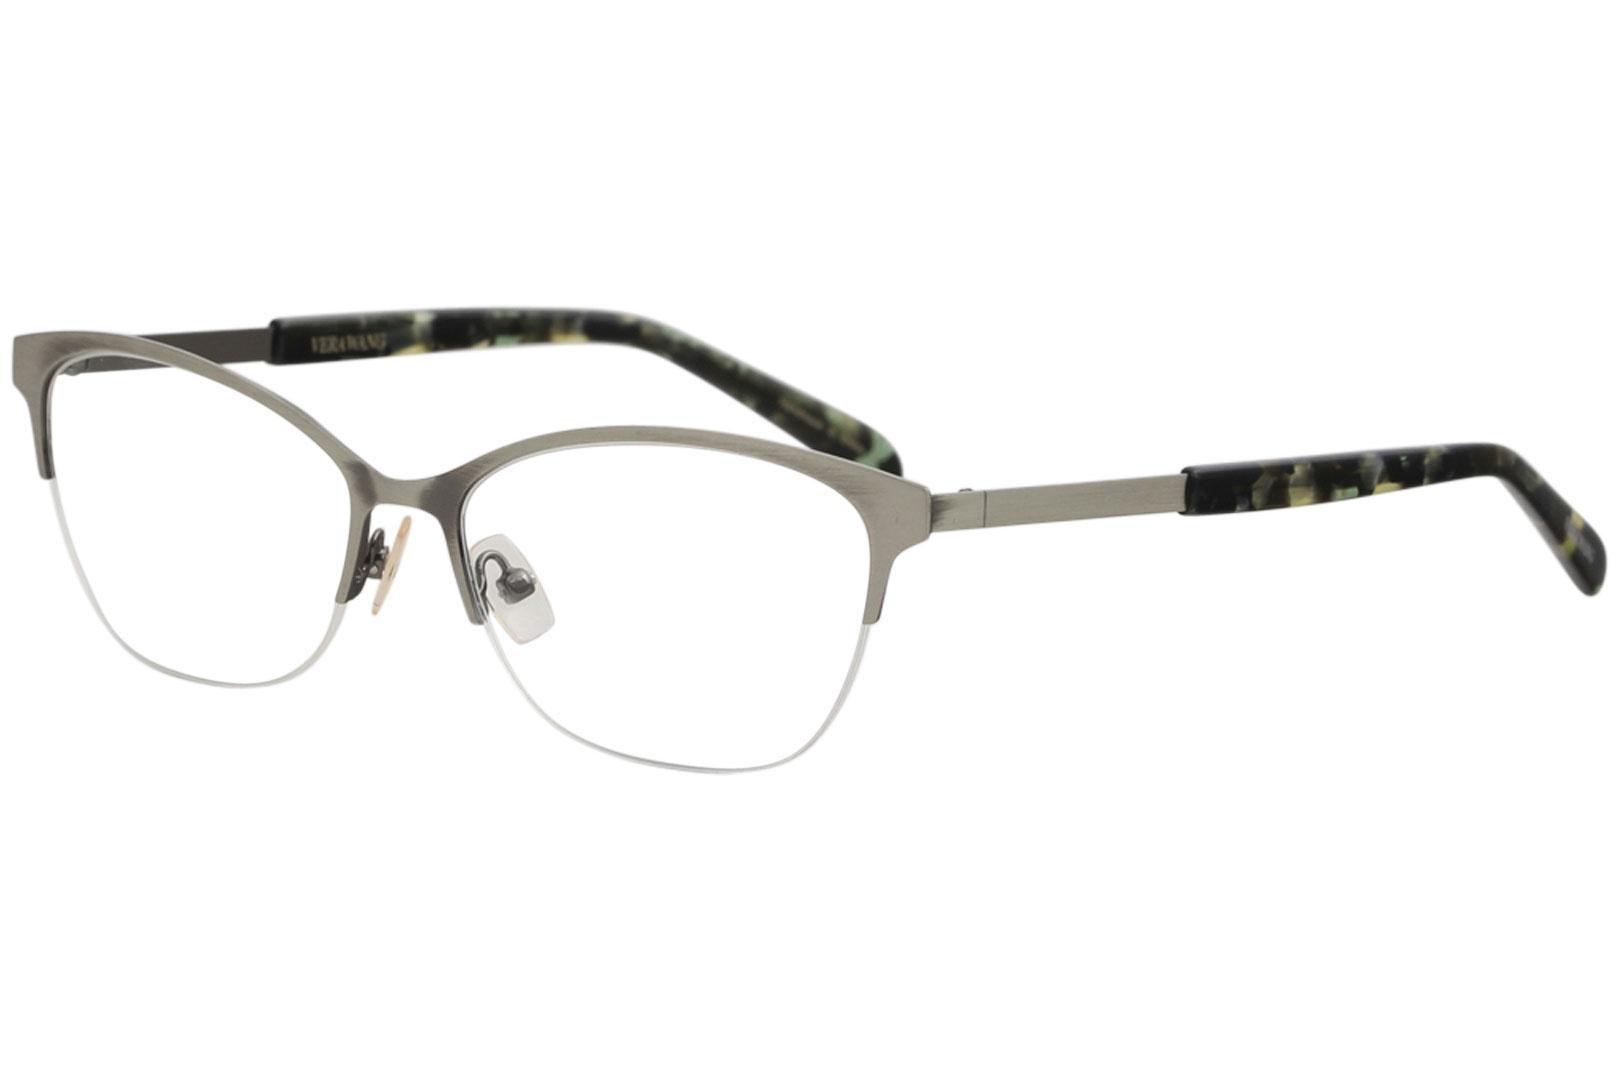 Vera Wang Women's Eyeglasses V511 V/511 Half Rim Optical Frame - Khaki Tortoise   KH/TO - Lens 52 Bridge 15 Temple 137mm